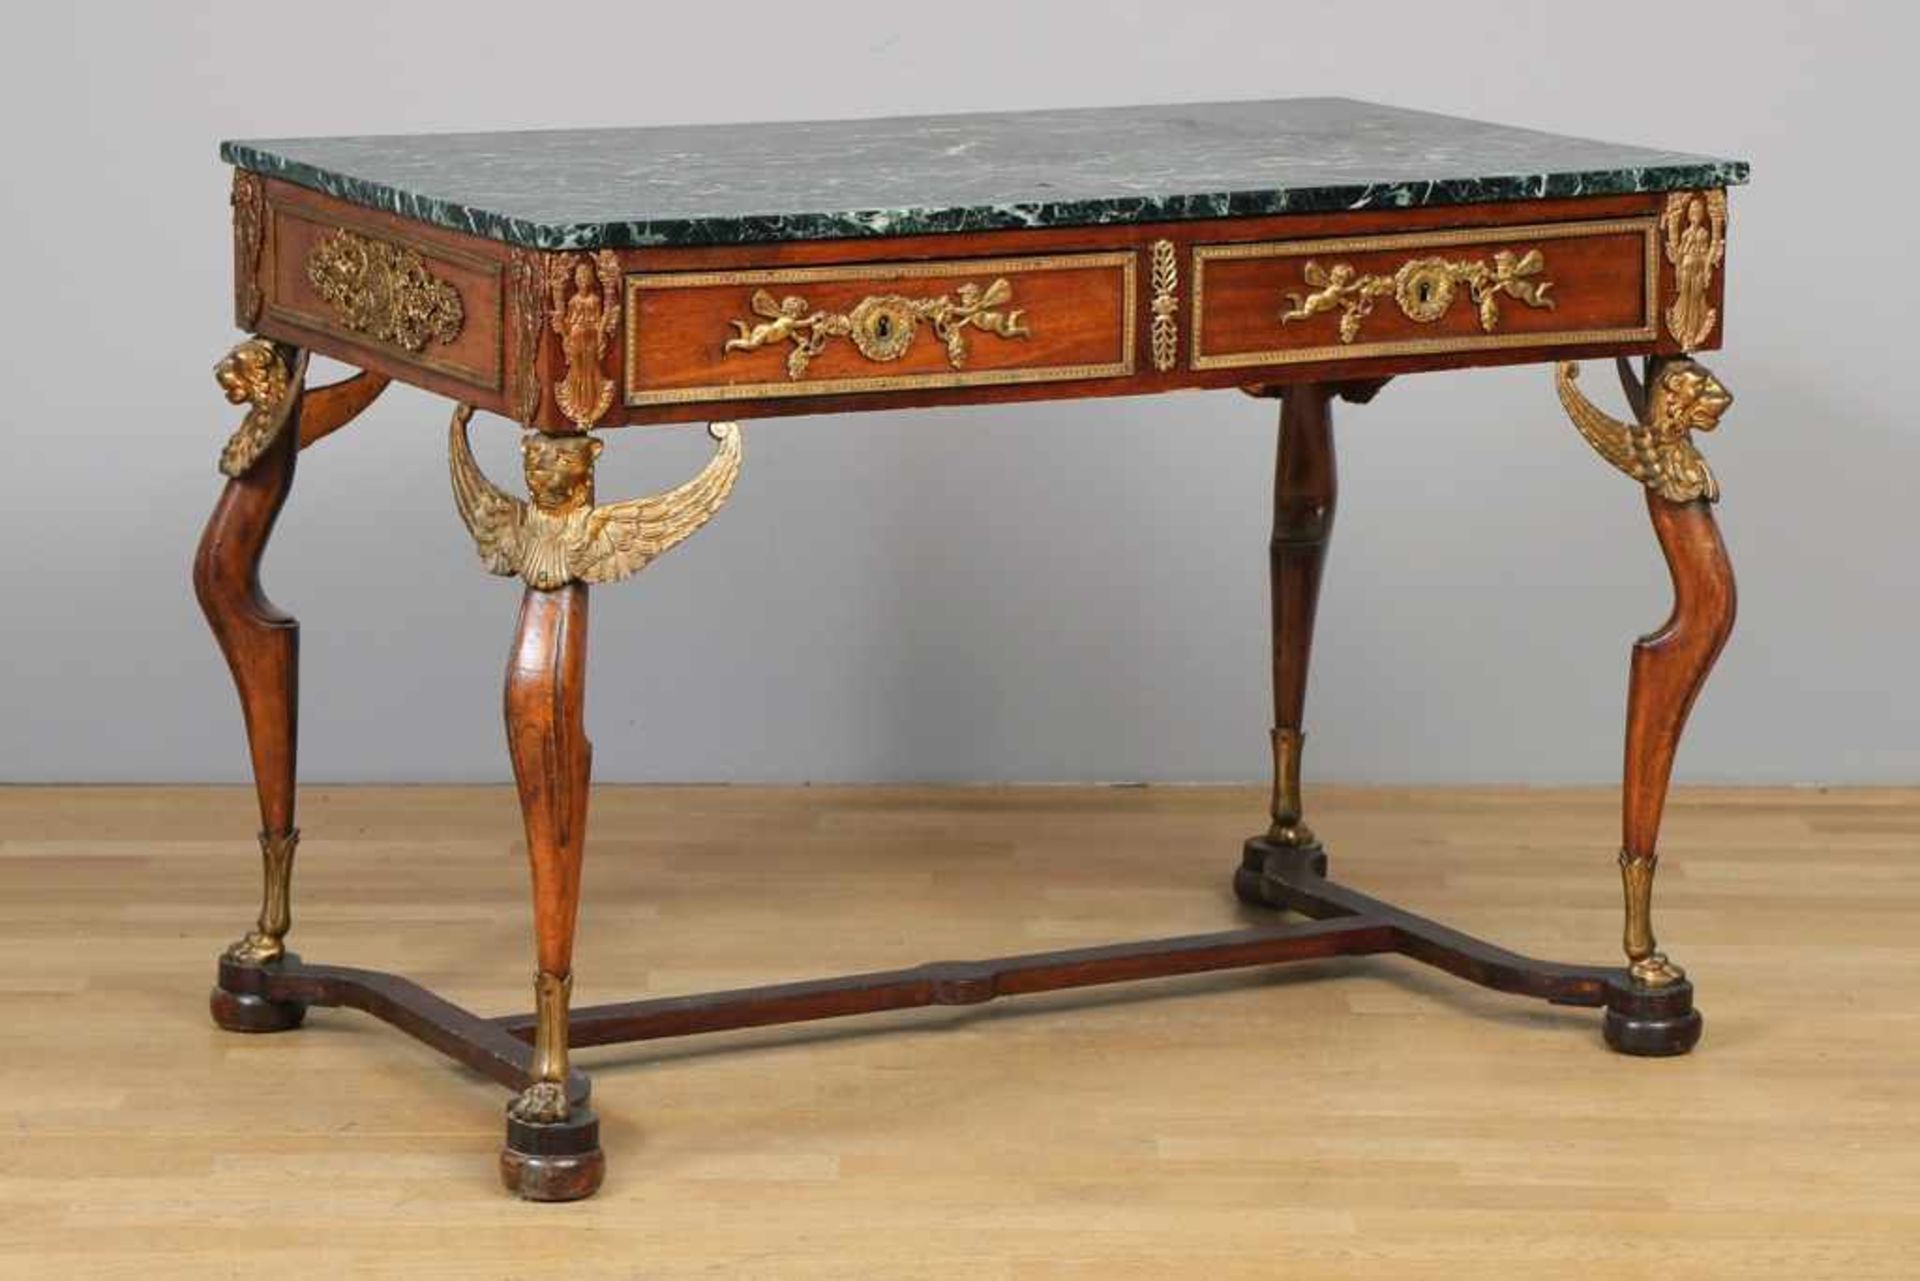 Schreibtisch im Stile des Empire Mahagoni u.a. Edelhölzer, furniert, Frankreich, 19. Jhdt., eckige